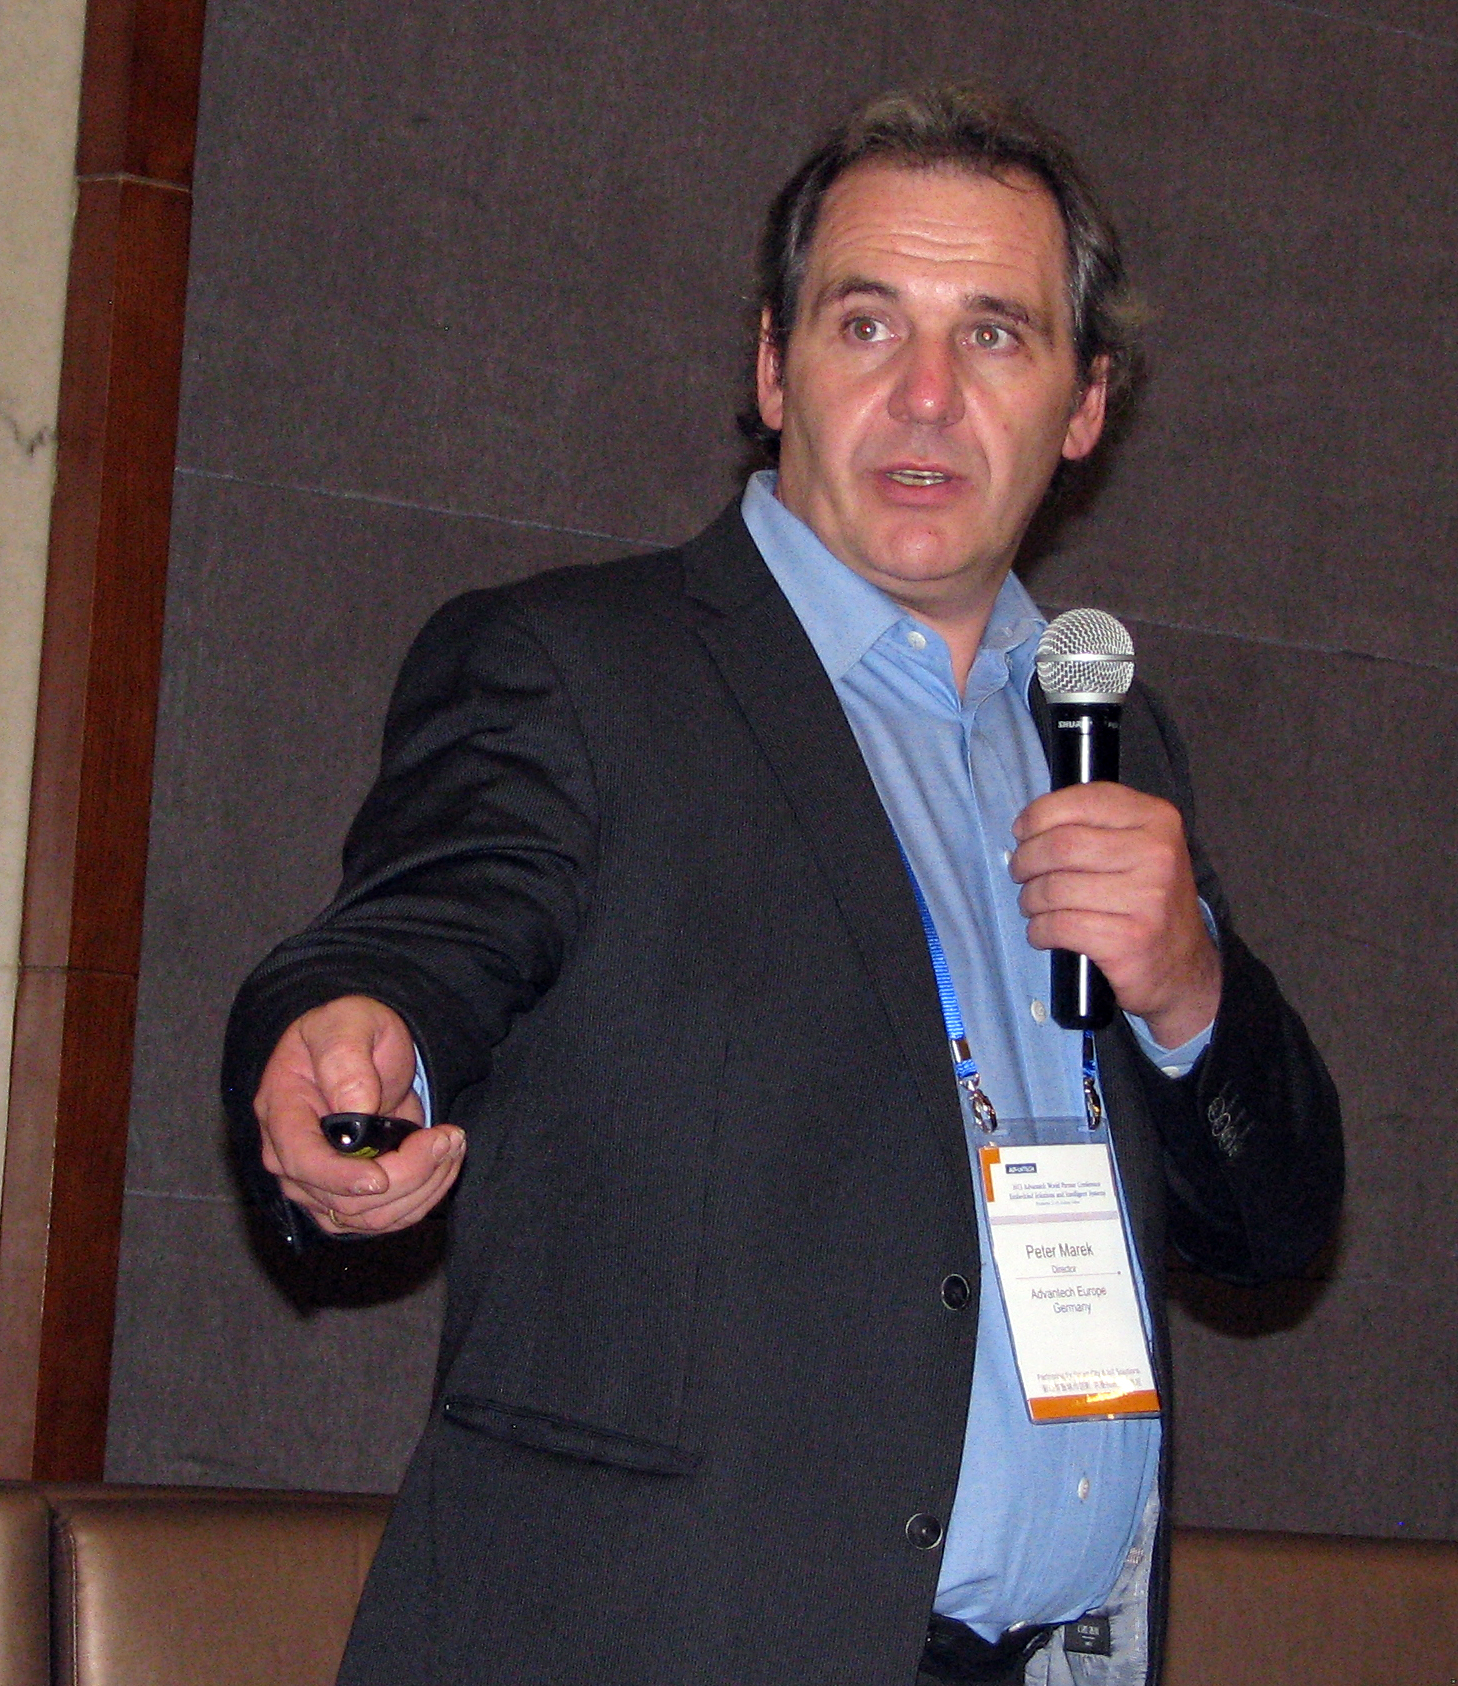 Peter Marek, Senior Director, Advantech